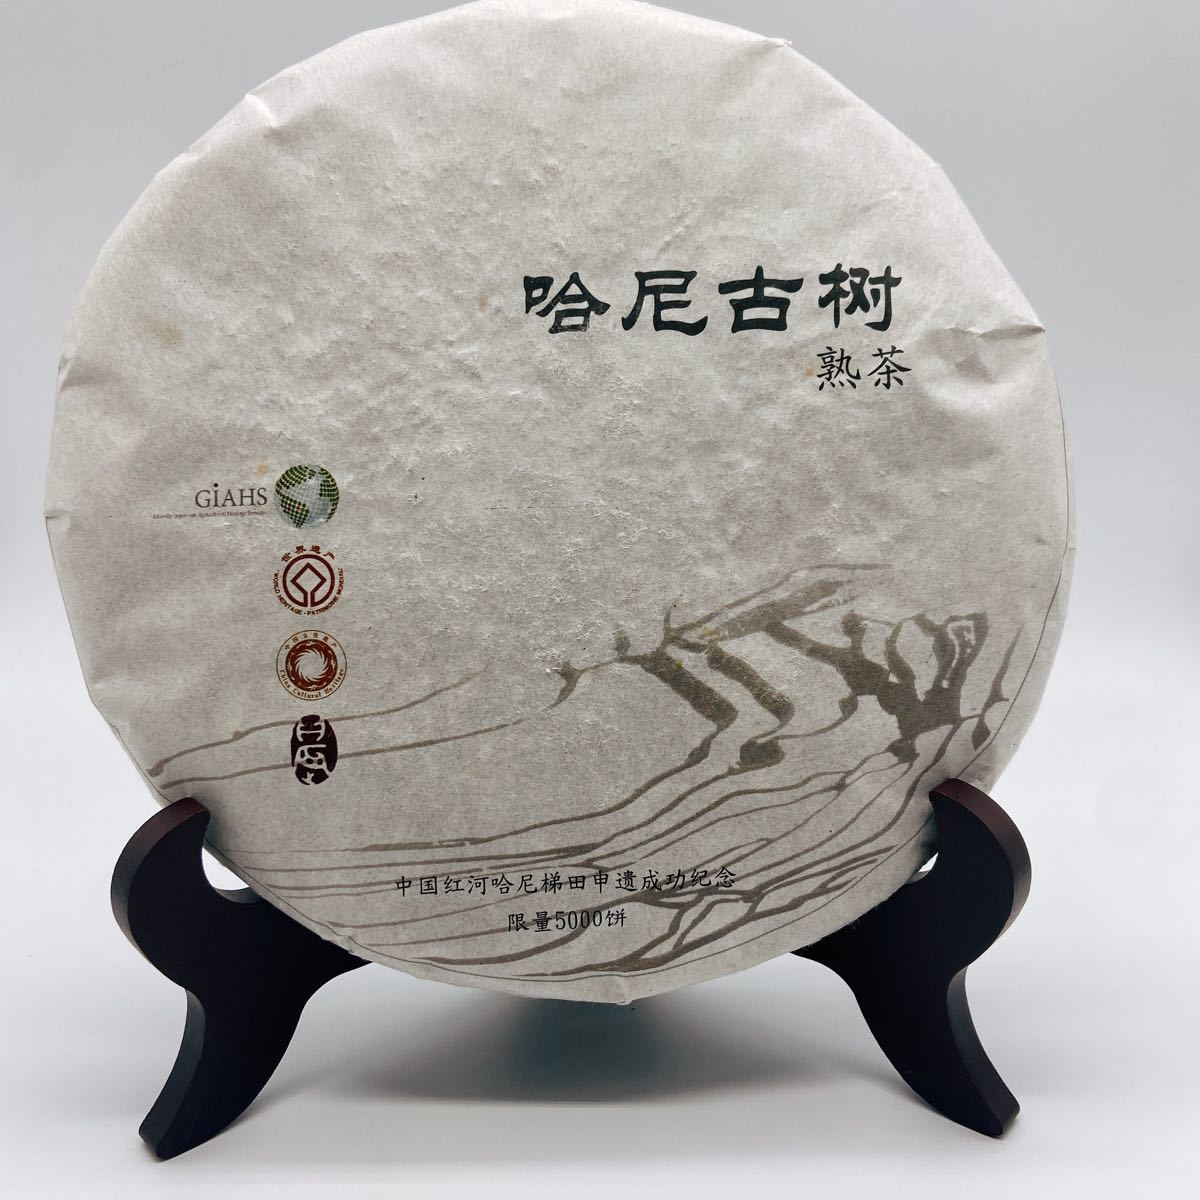 哈尼古茶 雲南省 プーアル茶「哈尼古樹」熟茶 2007年 極上 稀少品